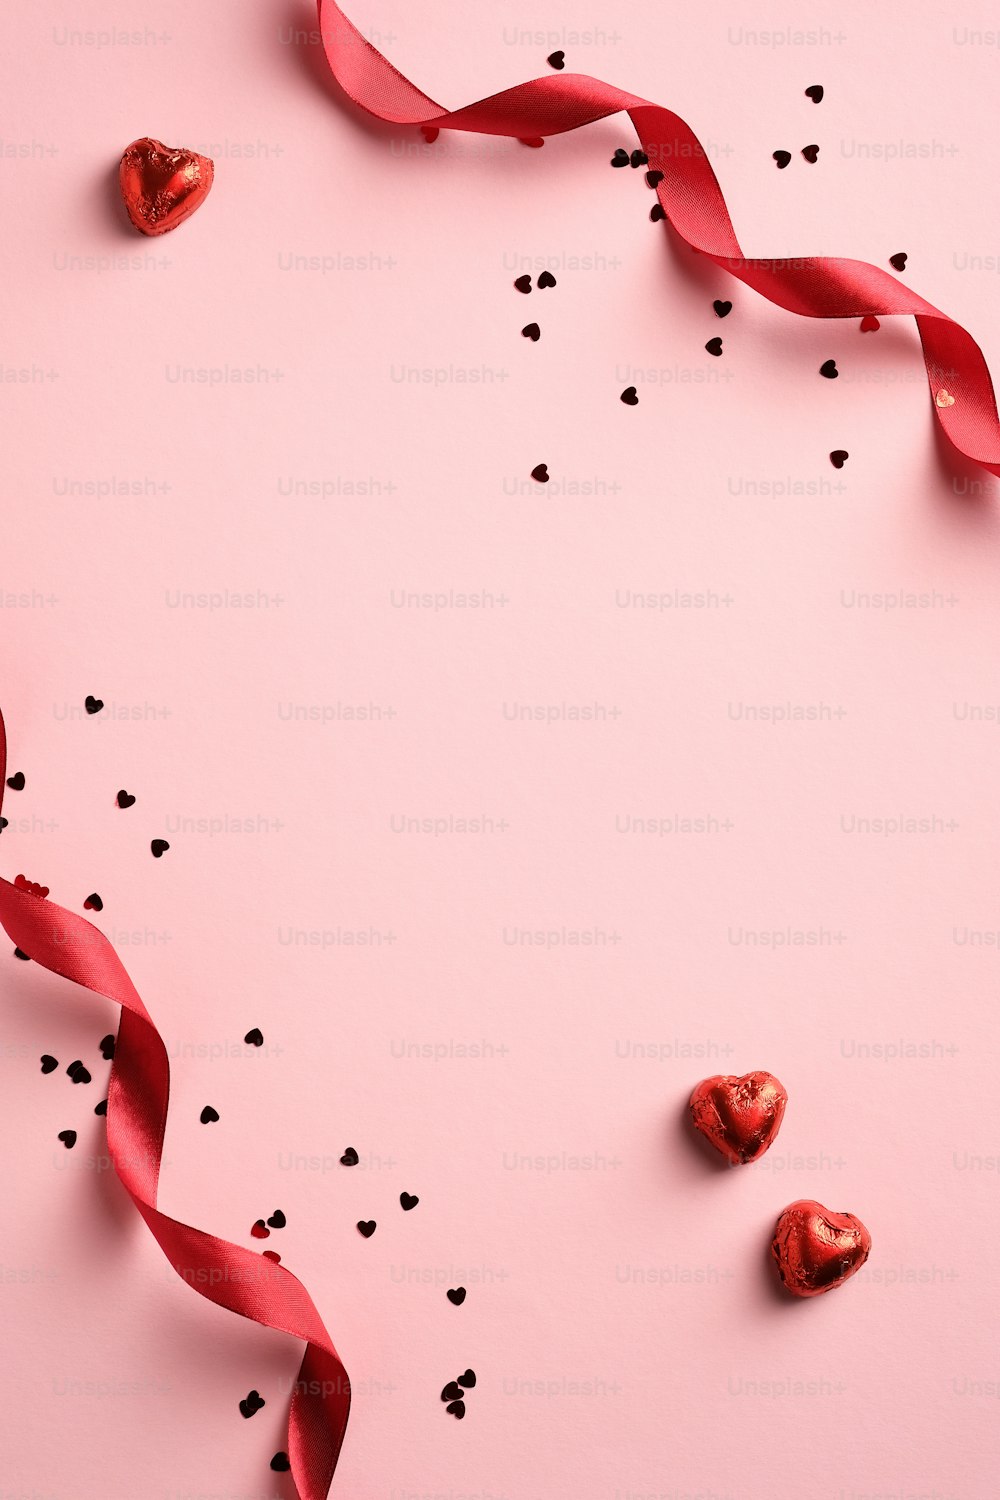 Eleganter Valentinstaghintergrund mit rotem Band, Konfetti, herzförmigen Süßigkeiten auf rosa Hintergrund. Minimalistischer Stil. Flache Liege.